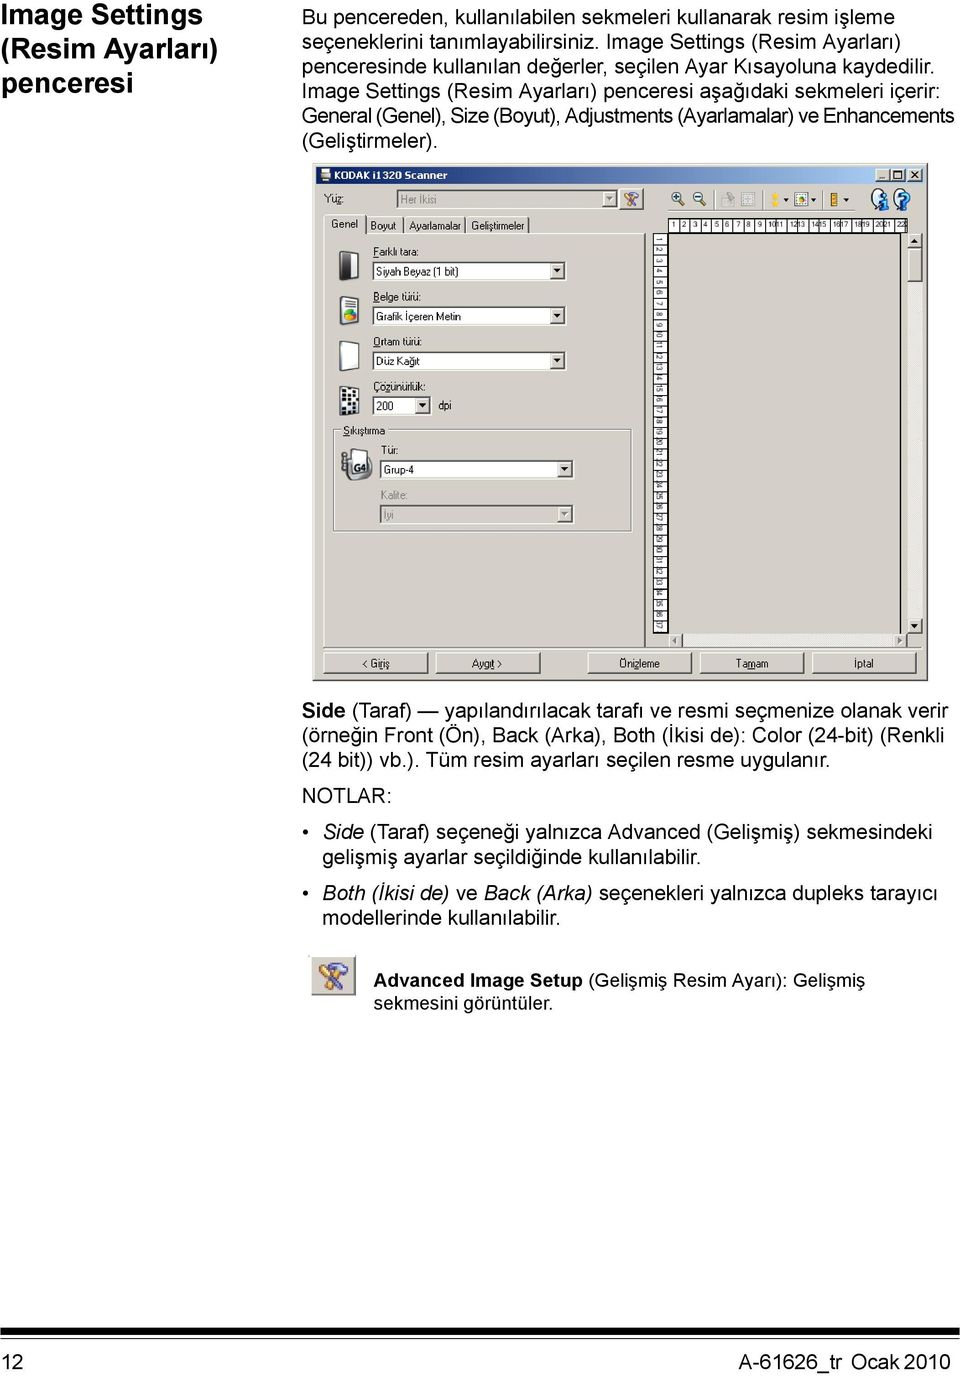 Image Settings (Resim Ayarları) penceresi aşağıdaki sekmeleri içerir: General (Genel), Size (Boyut), Adjustments (Ayarlamalar) ve Enhancements (Geliştirmeler).